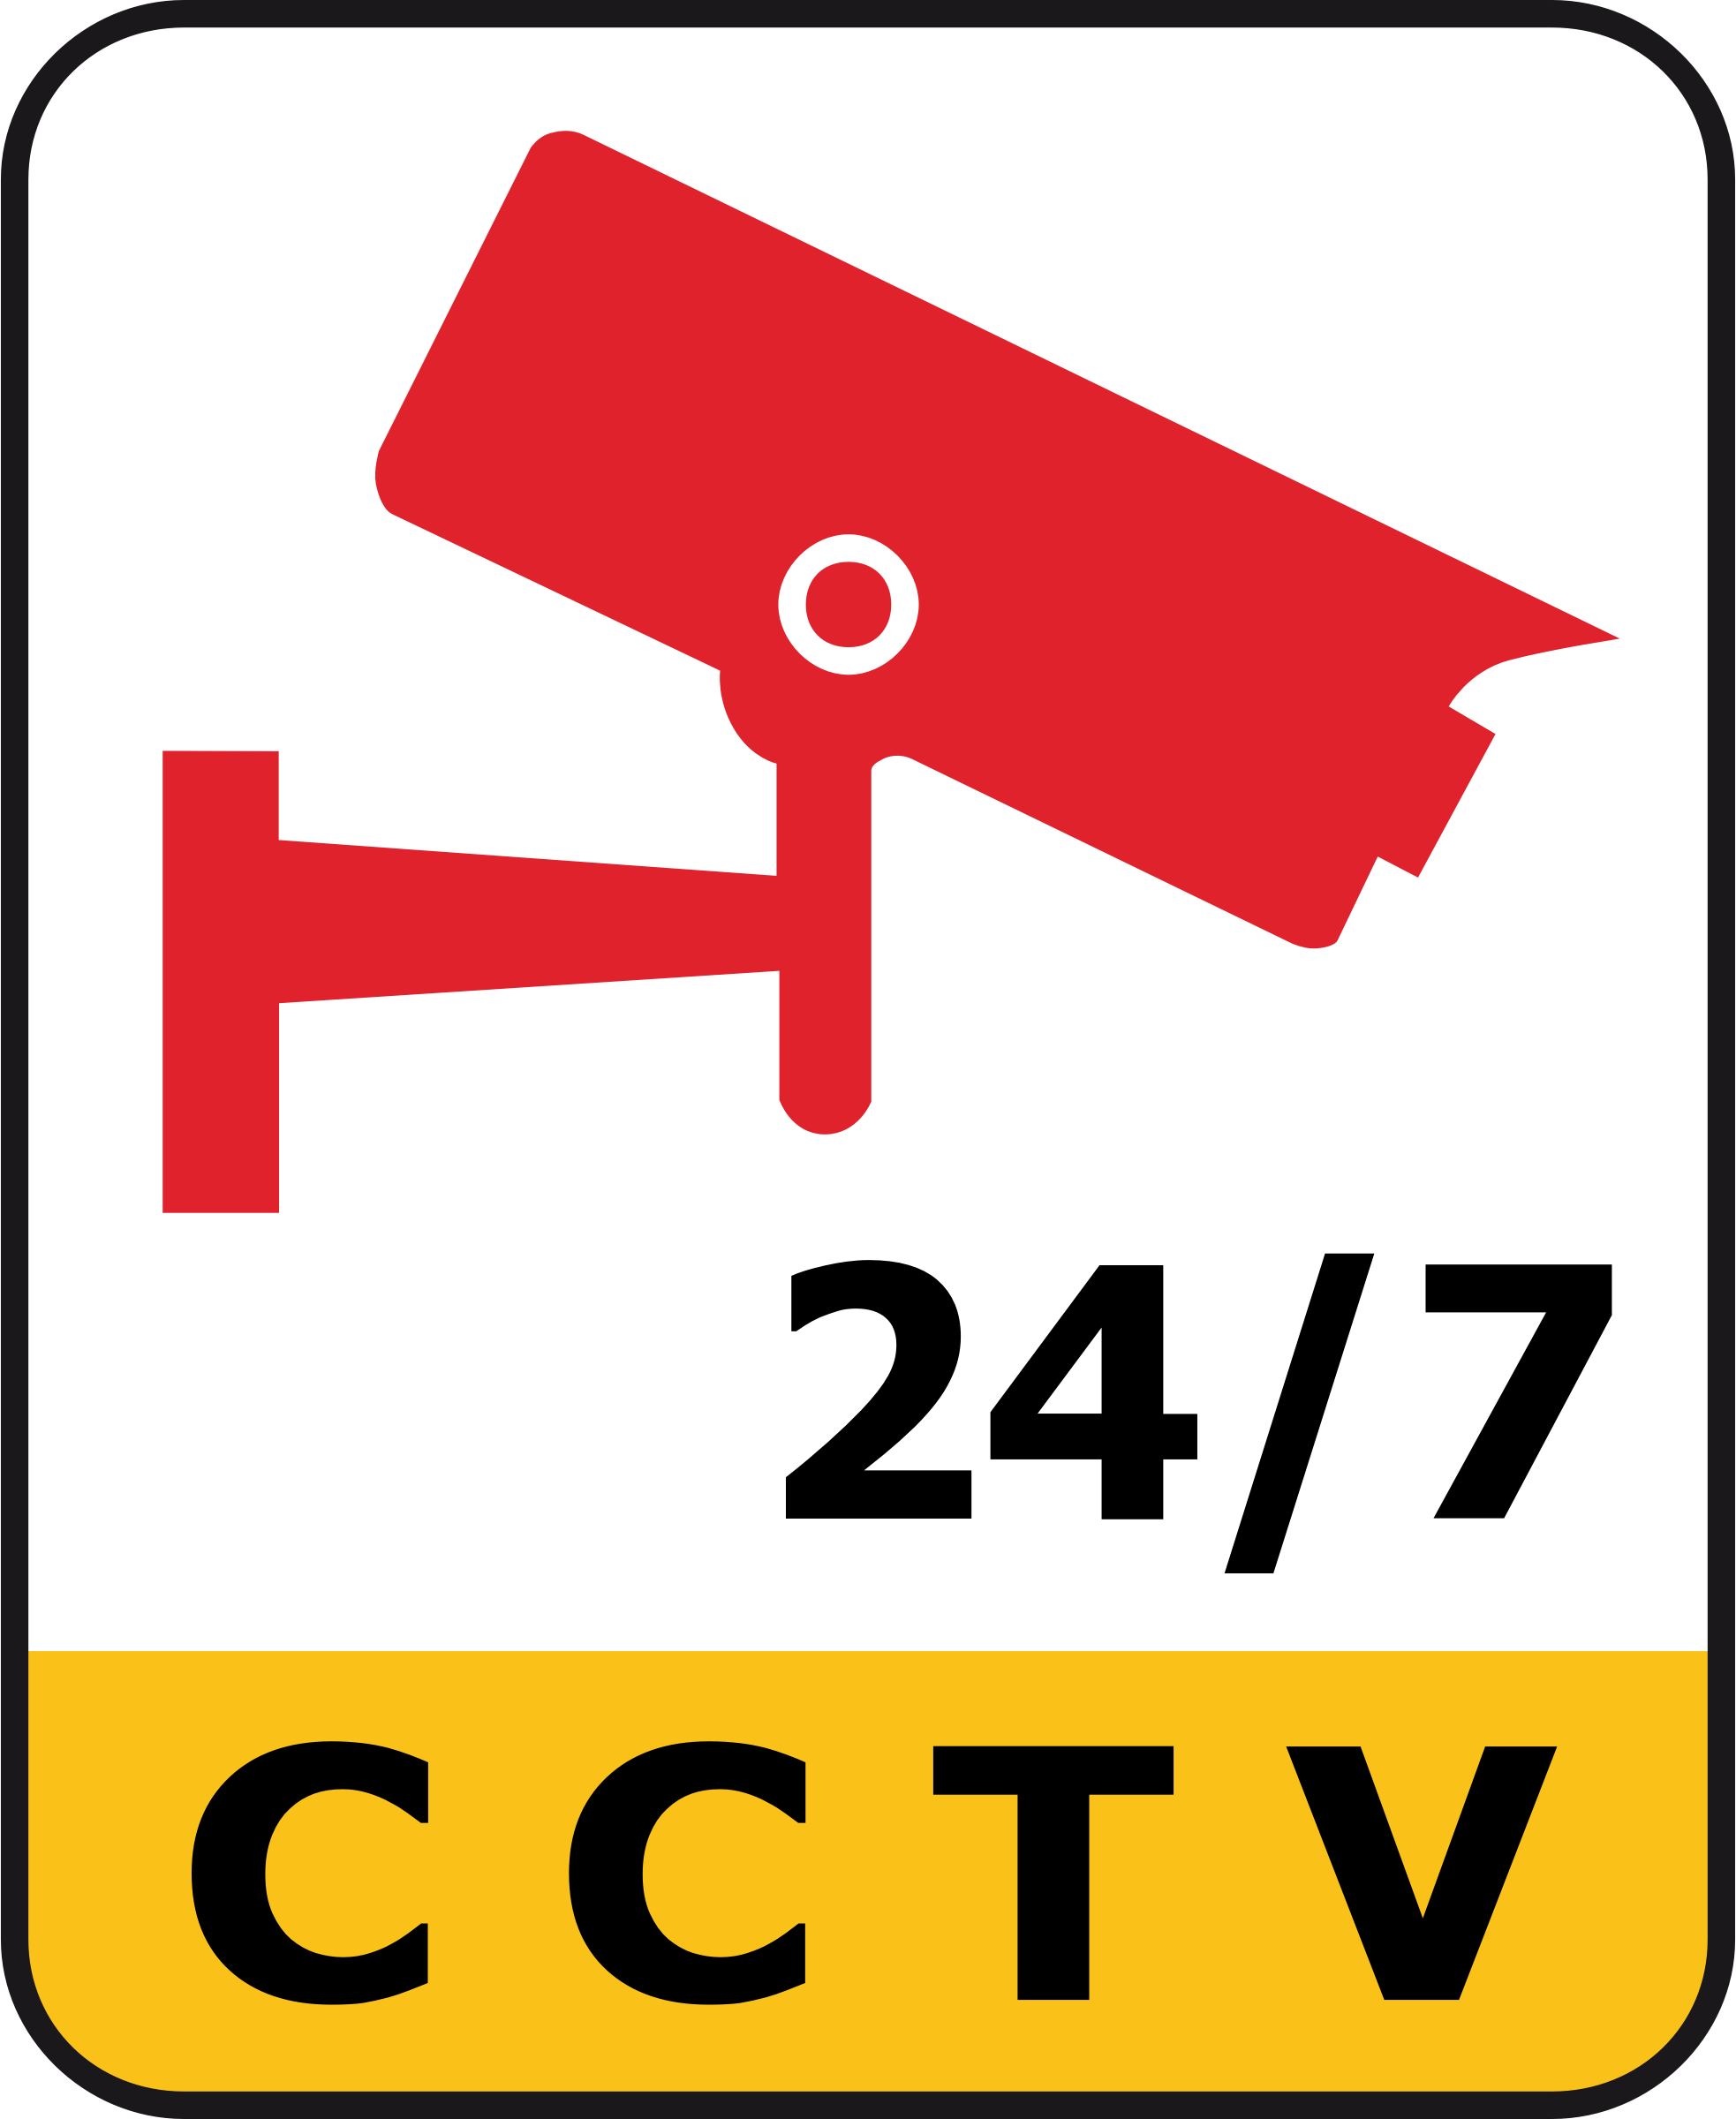 Cctv 24/7 Camera Surveillance - Cctv 24 7 (1966x2400)